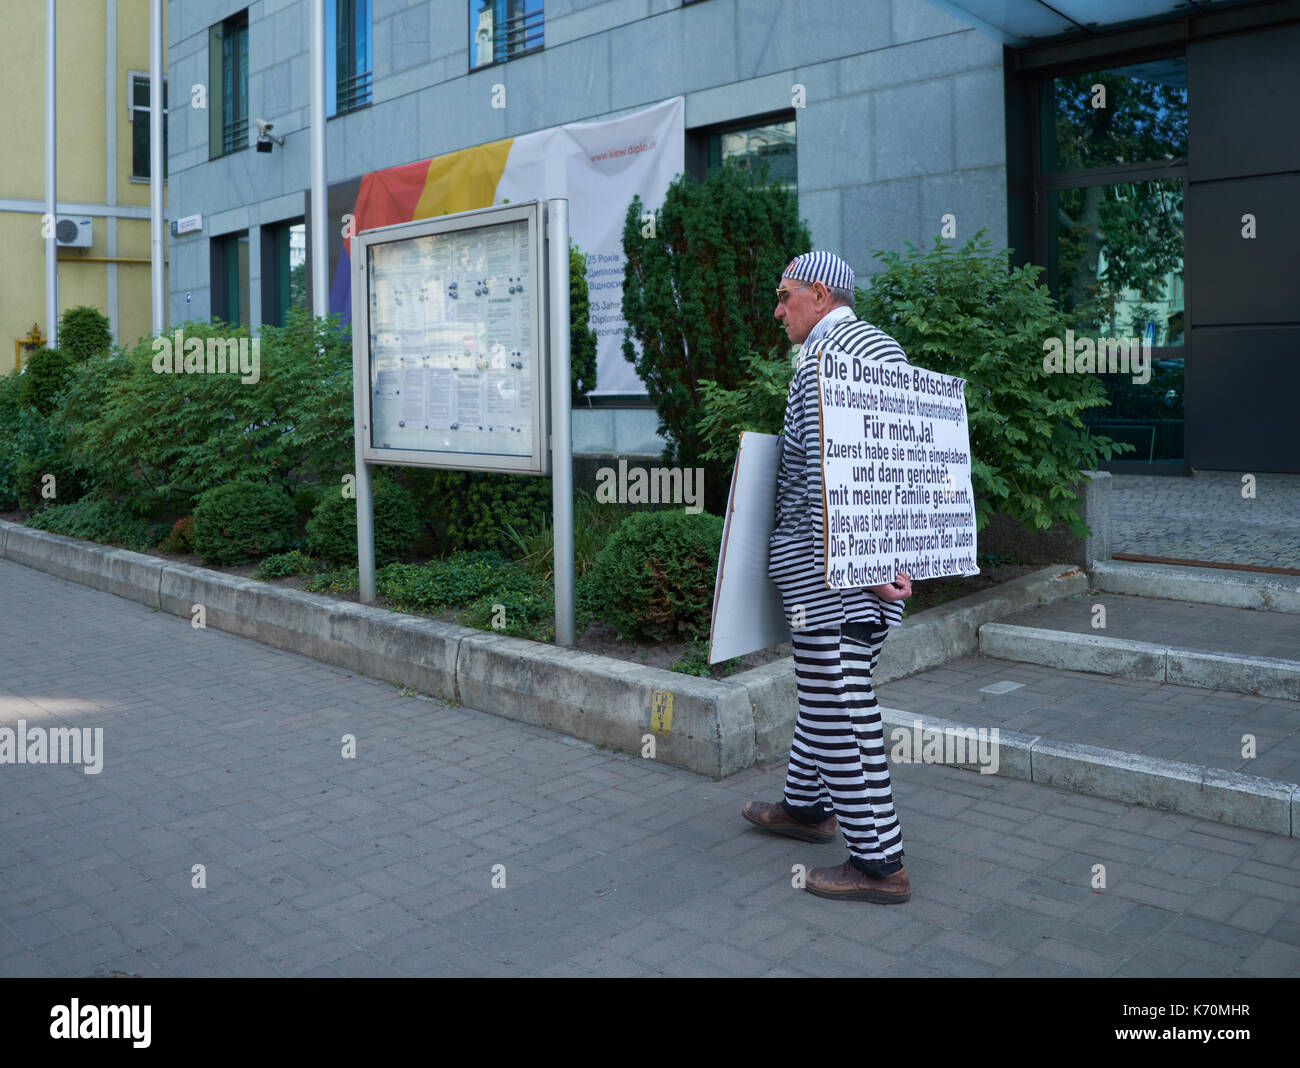 Kiew, Ukraine - Juni 06, 2017: Alter Mann in gefangenen Kostüm trägt Plakat mit Schuld an der deutschen Botschaft in Teheran Vor der deutschen Botschaft in Ky Stockfoto